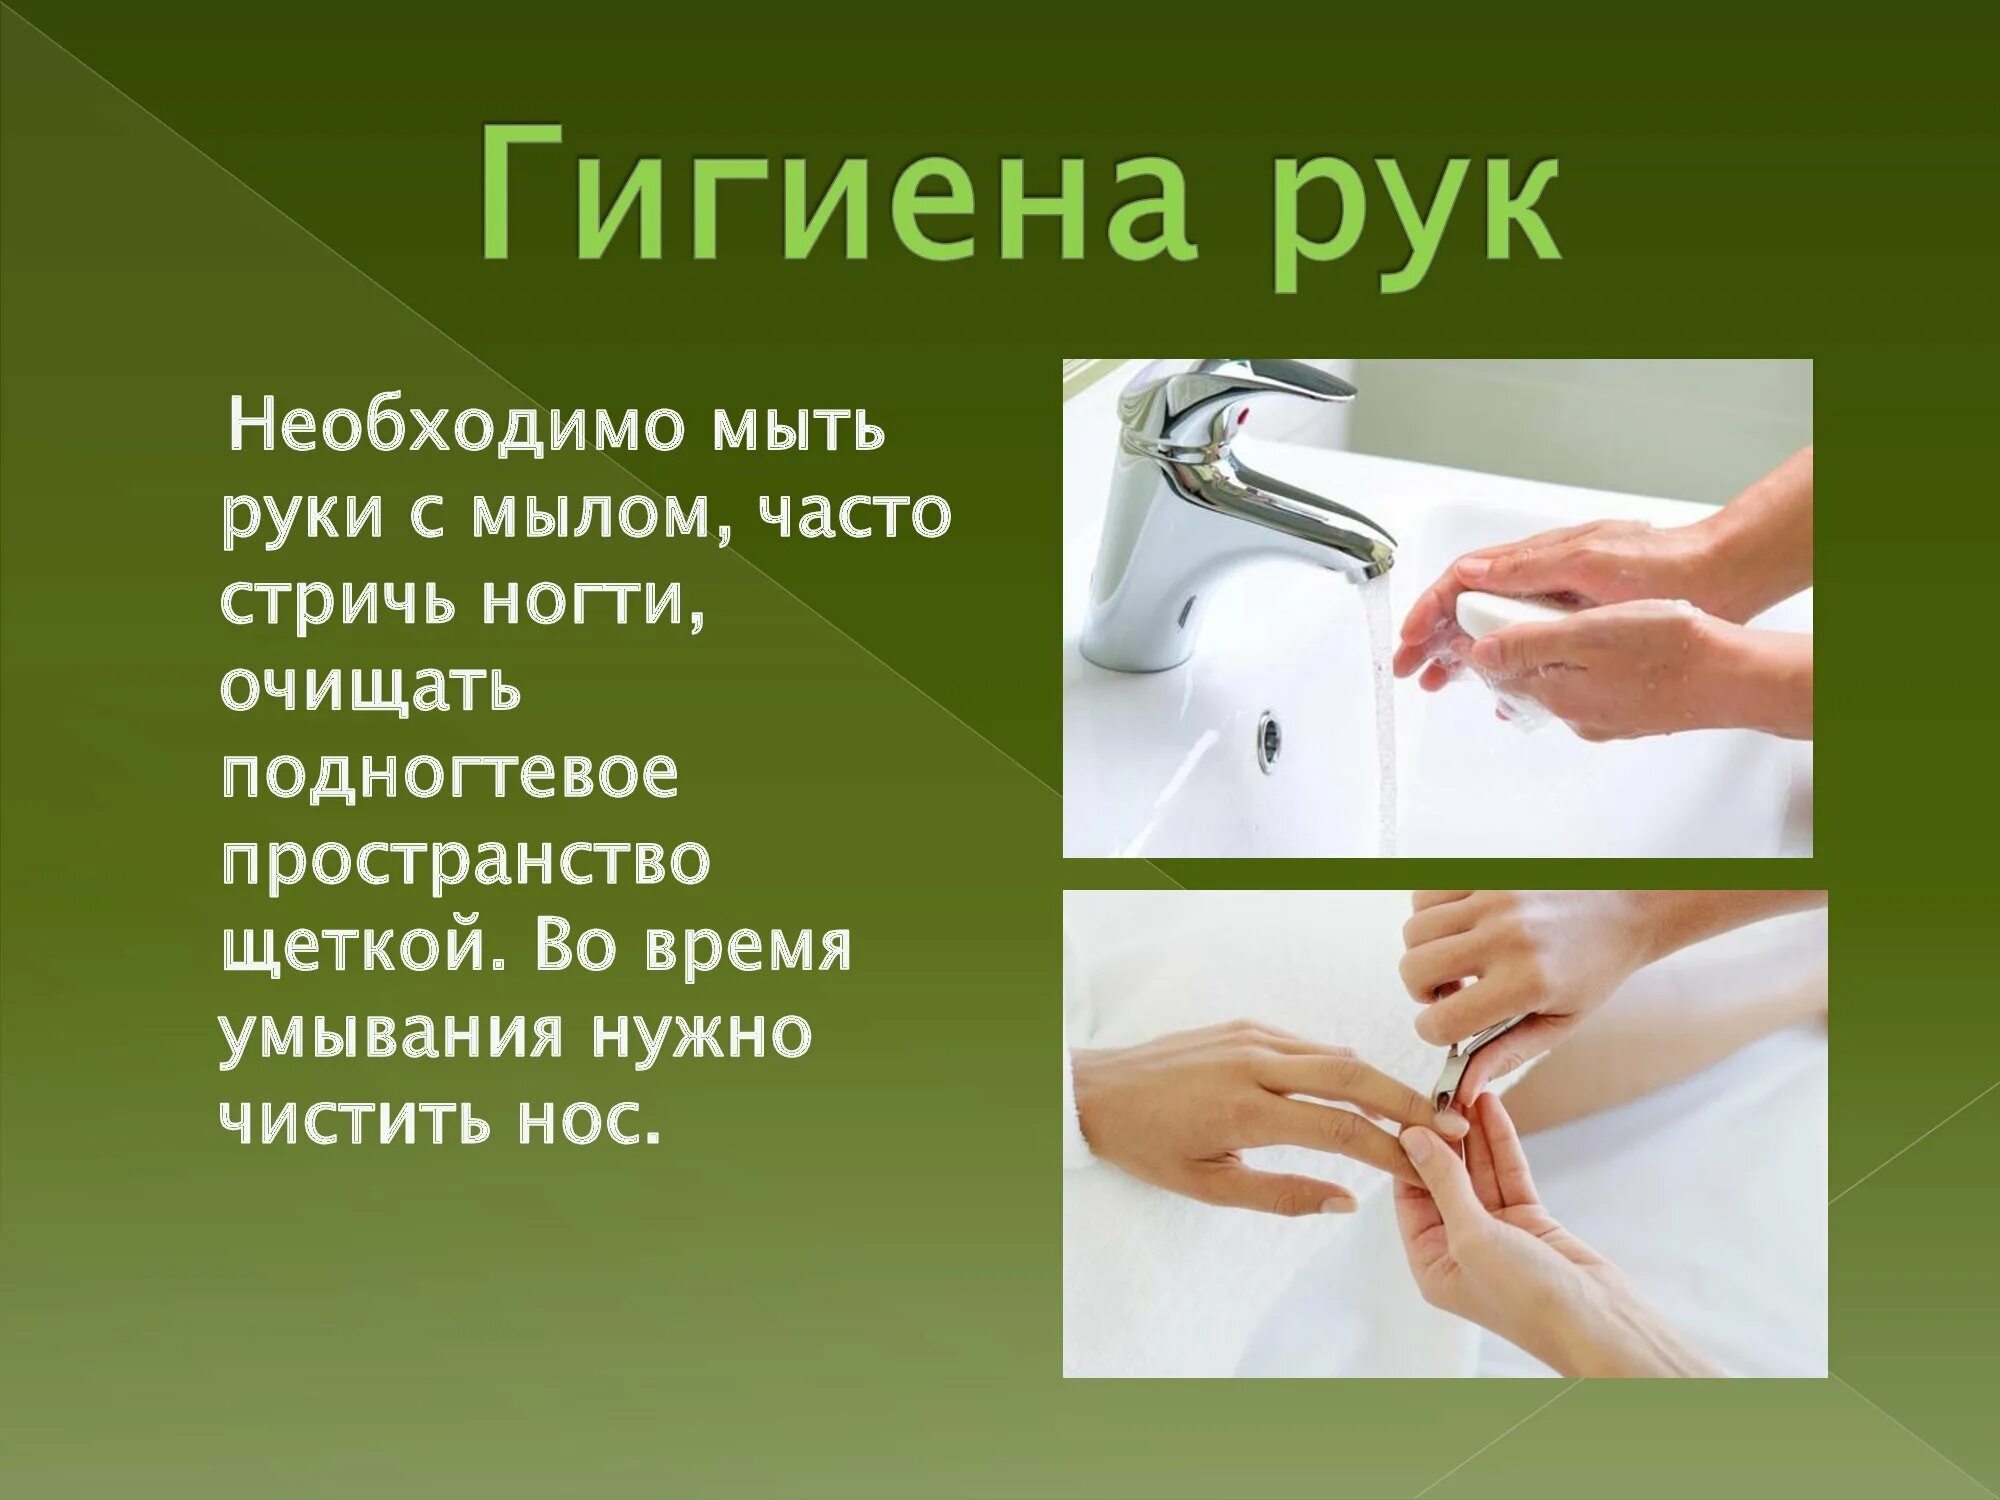 Мою руки 3 минуты. Гигиена рук. Гигиена мытья рук. Личная гигиена мытье рук. Гигиена мытья рук для детей.